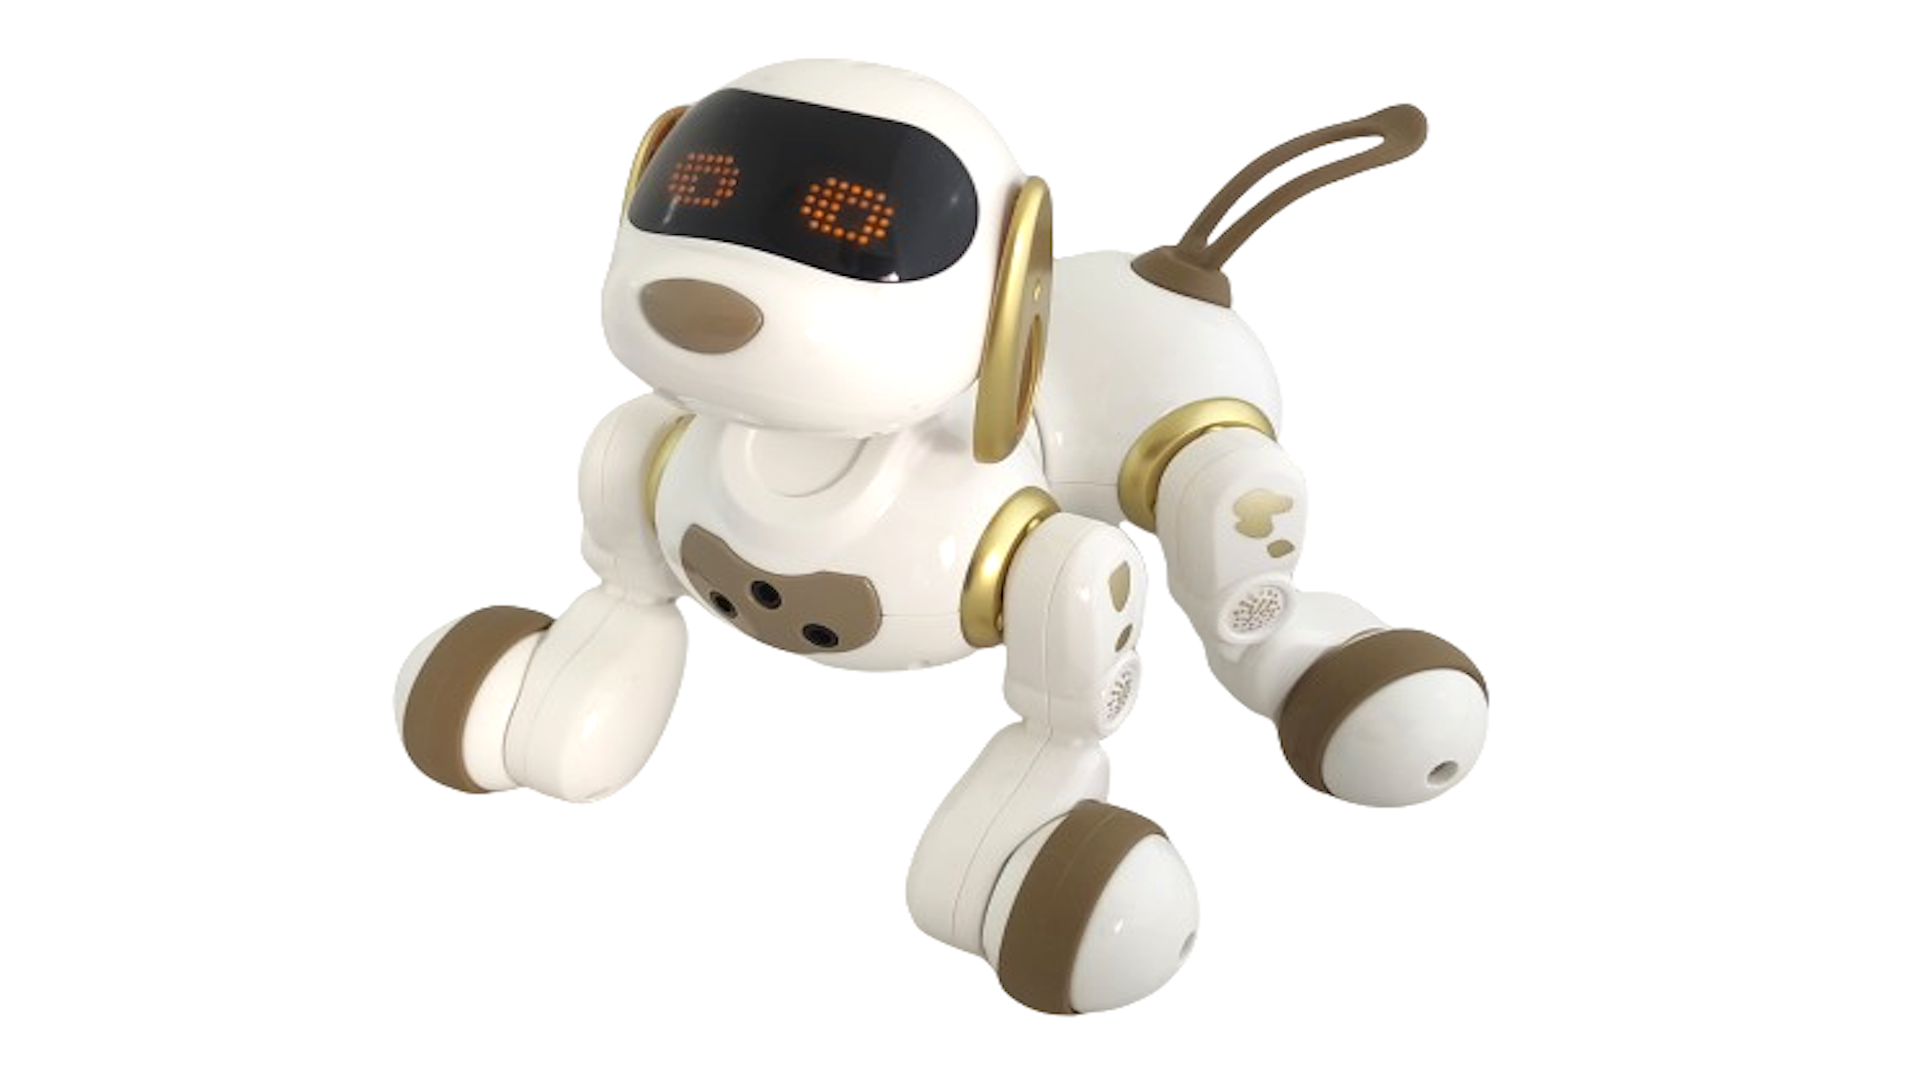 Интерактивная радиоуправляемая собака робот Smart Robot Dog Dexterity AMWELL AW-18011-GOLD робот для сборки и разборки кубика рубика gan robot